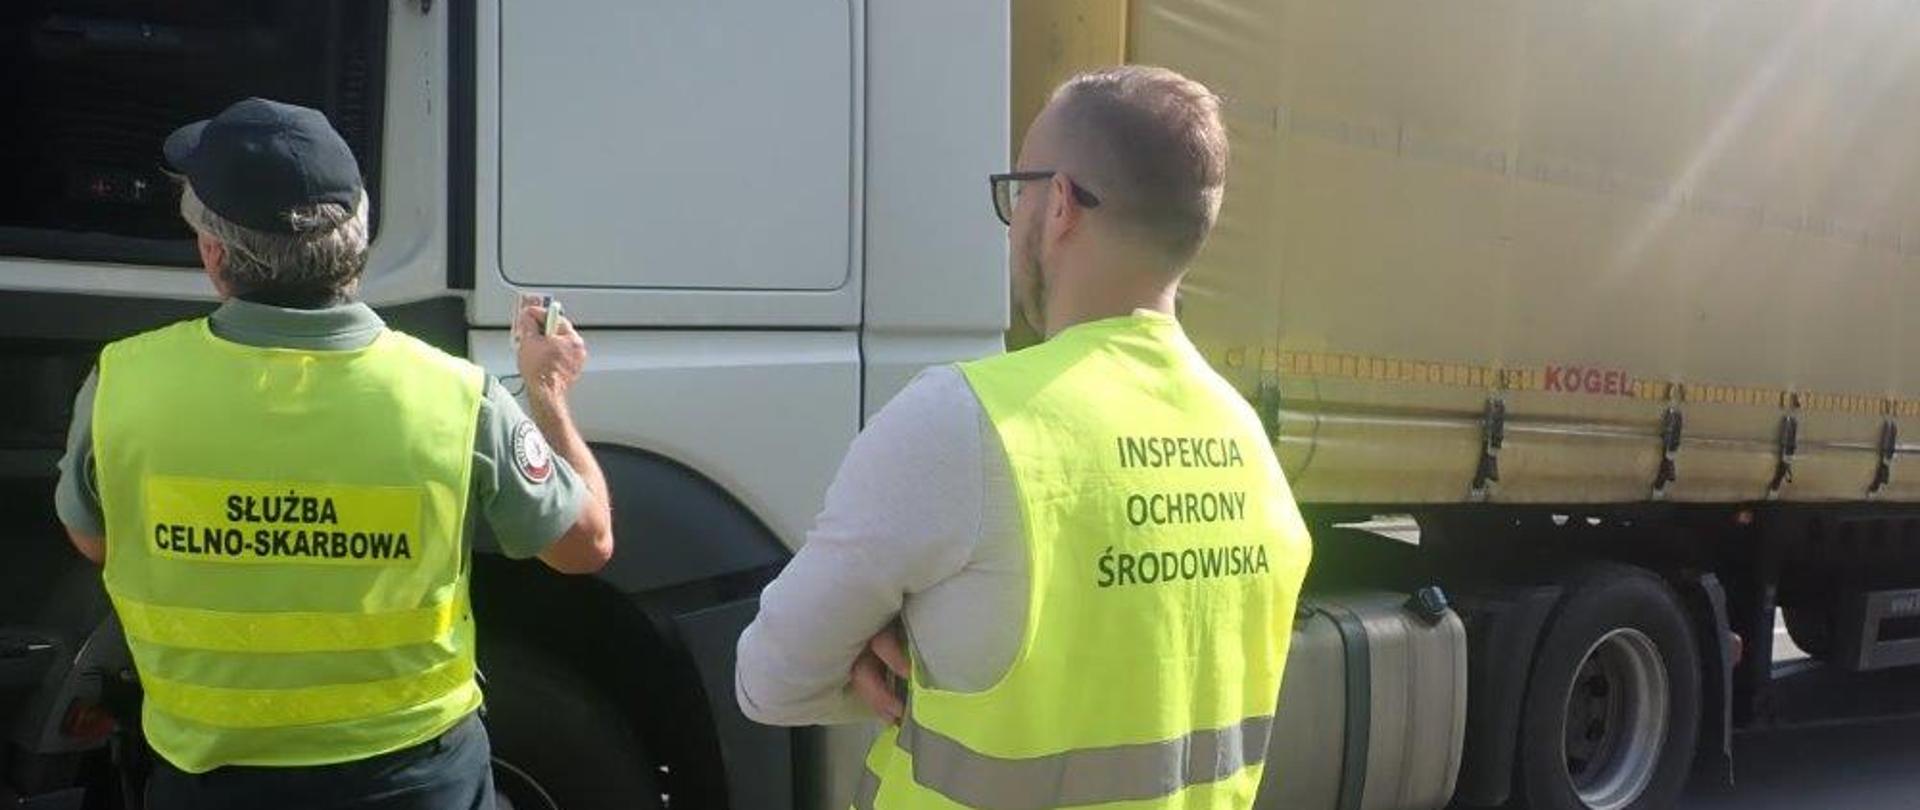 Pracownicy Inspekcji Ochrony Środowiska i Służby Celno-Skarbowej kontrolujący samochód ciężarowy.